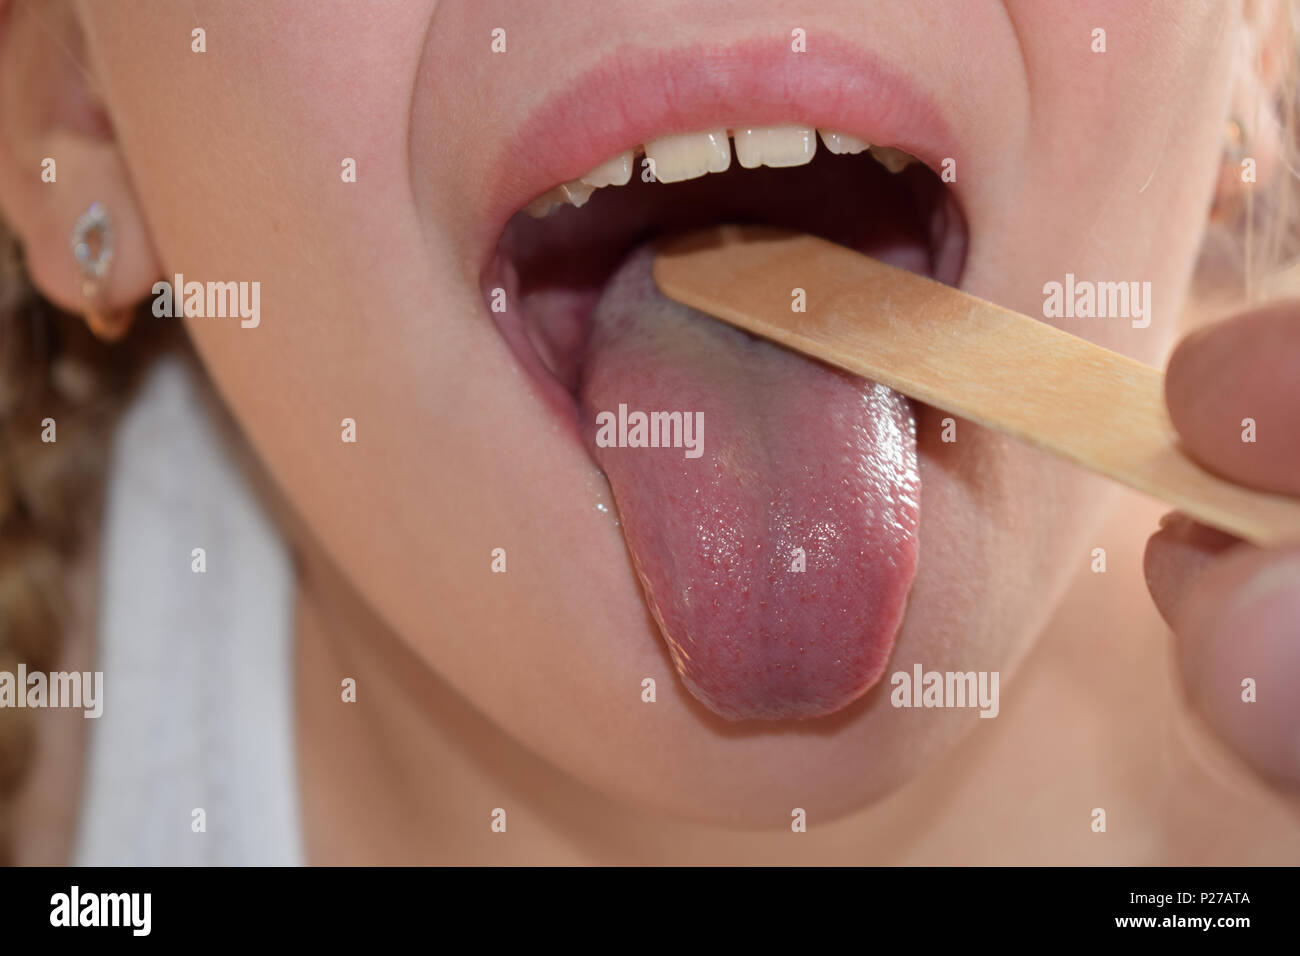 throat examination Stock Photo